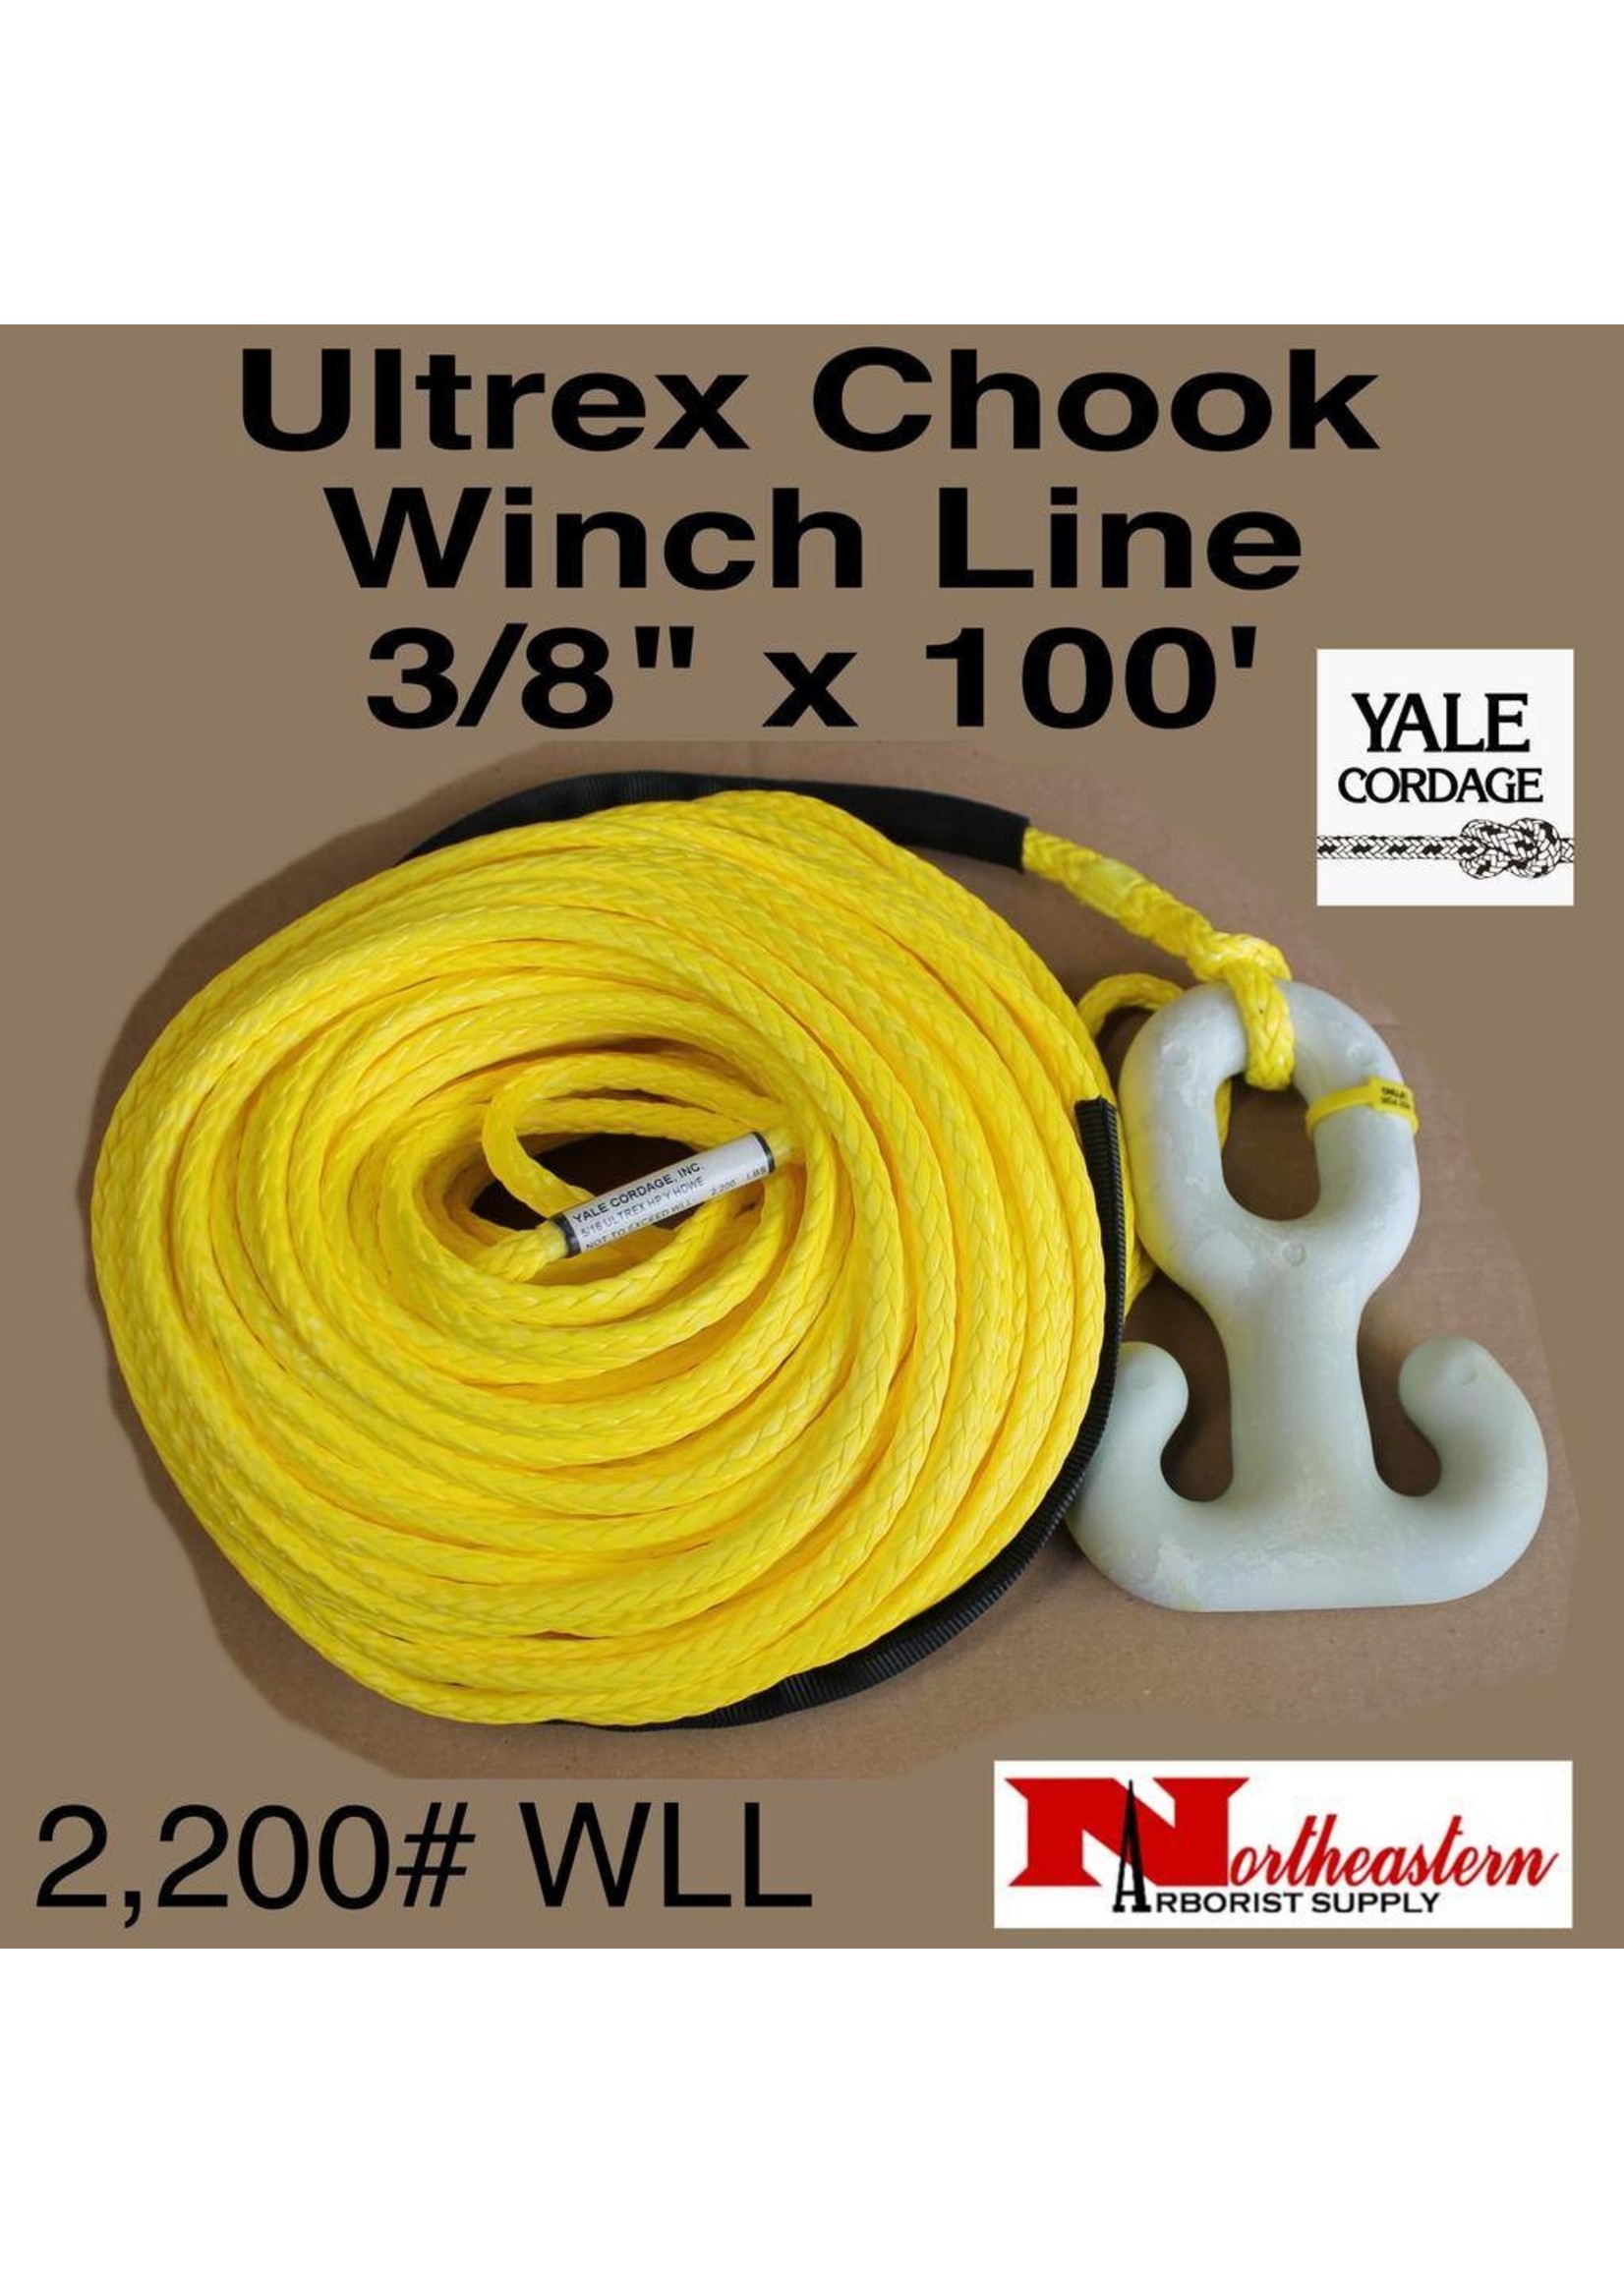 Yale Cordage Chook & Winch Rope 3/8" x 100'